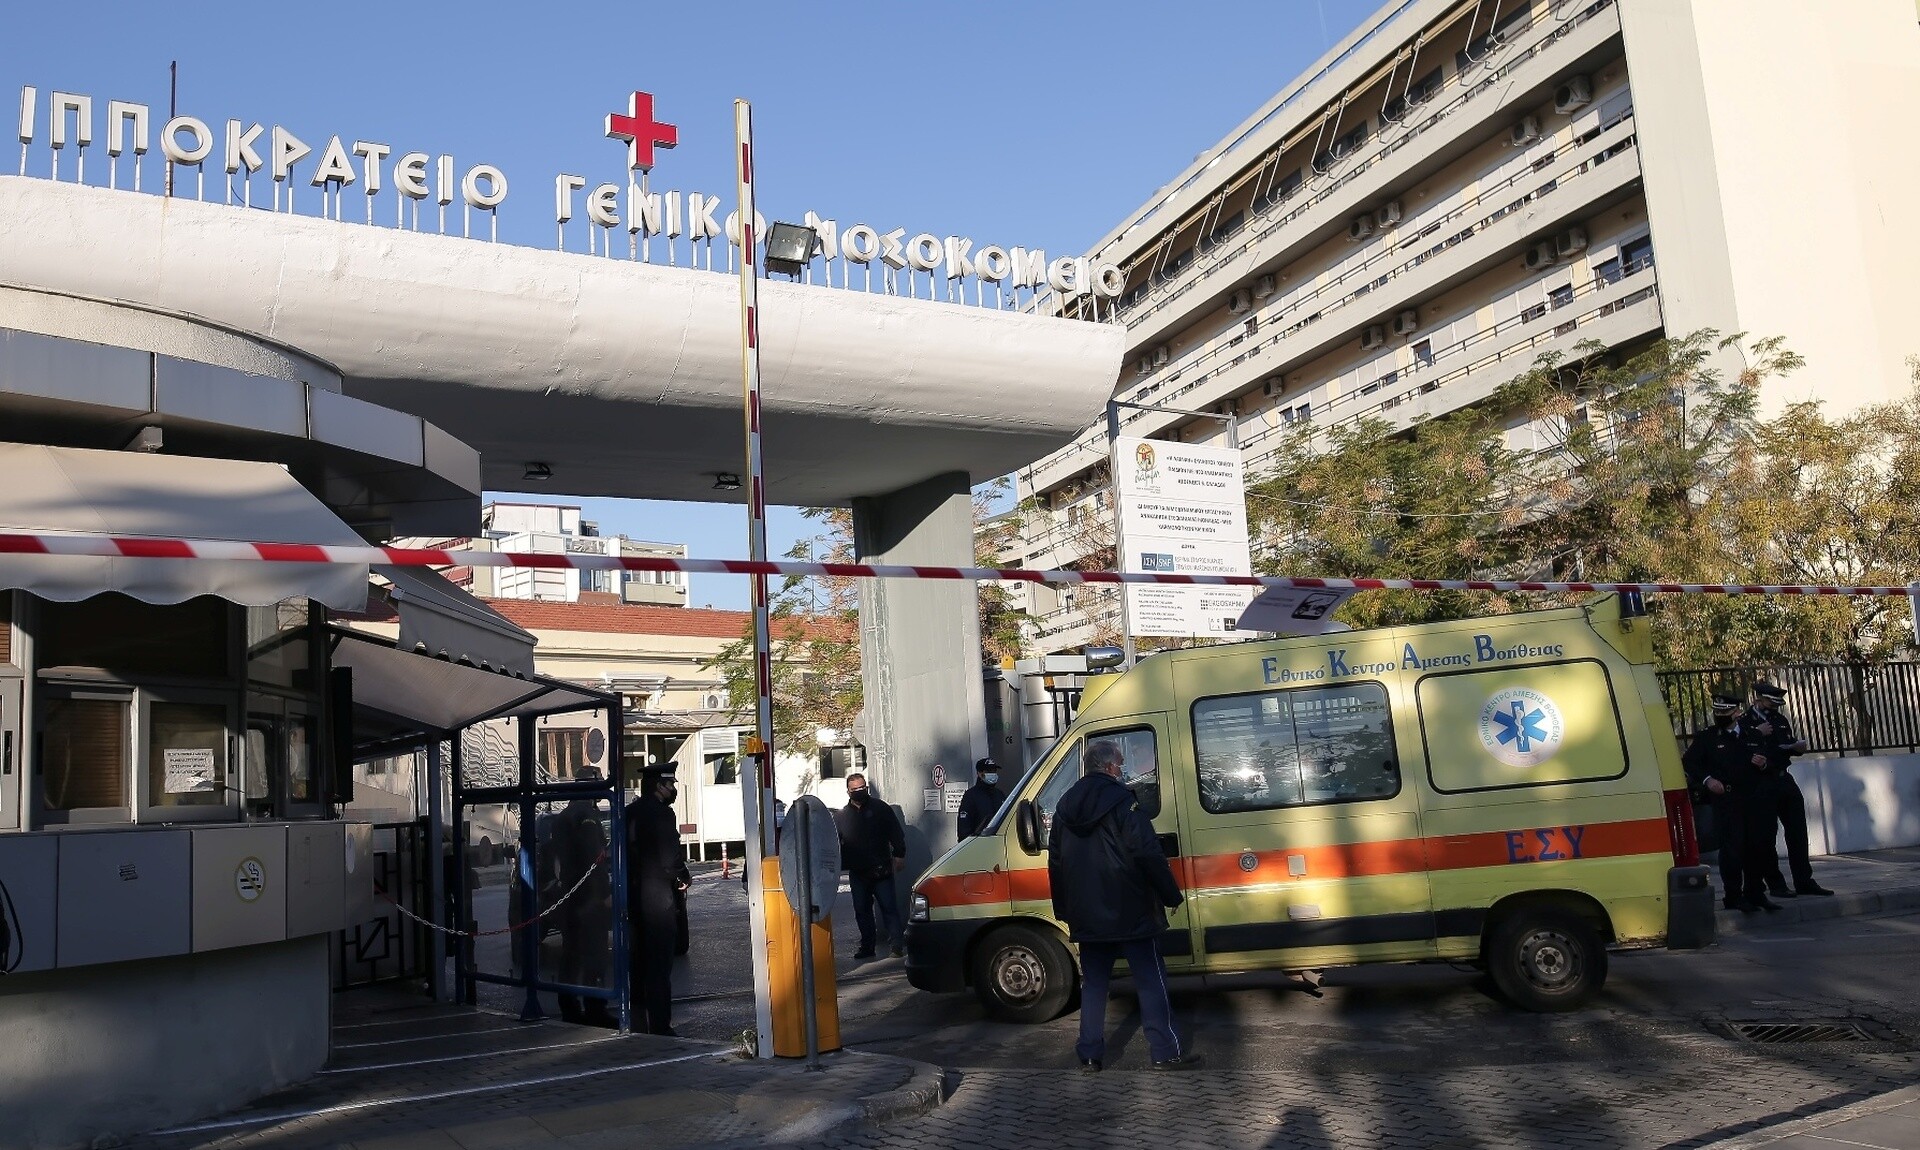 Διπλή συνδυασμένη μεταμόσχευση ήπατος-νεφρού στο «Ιπποκράτειο» Θεσσαλονίκης